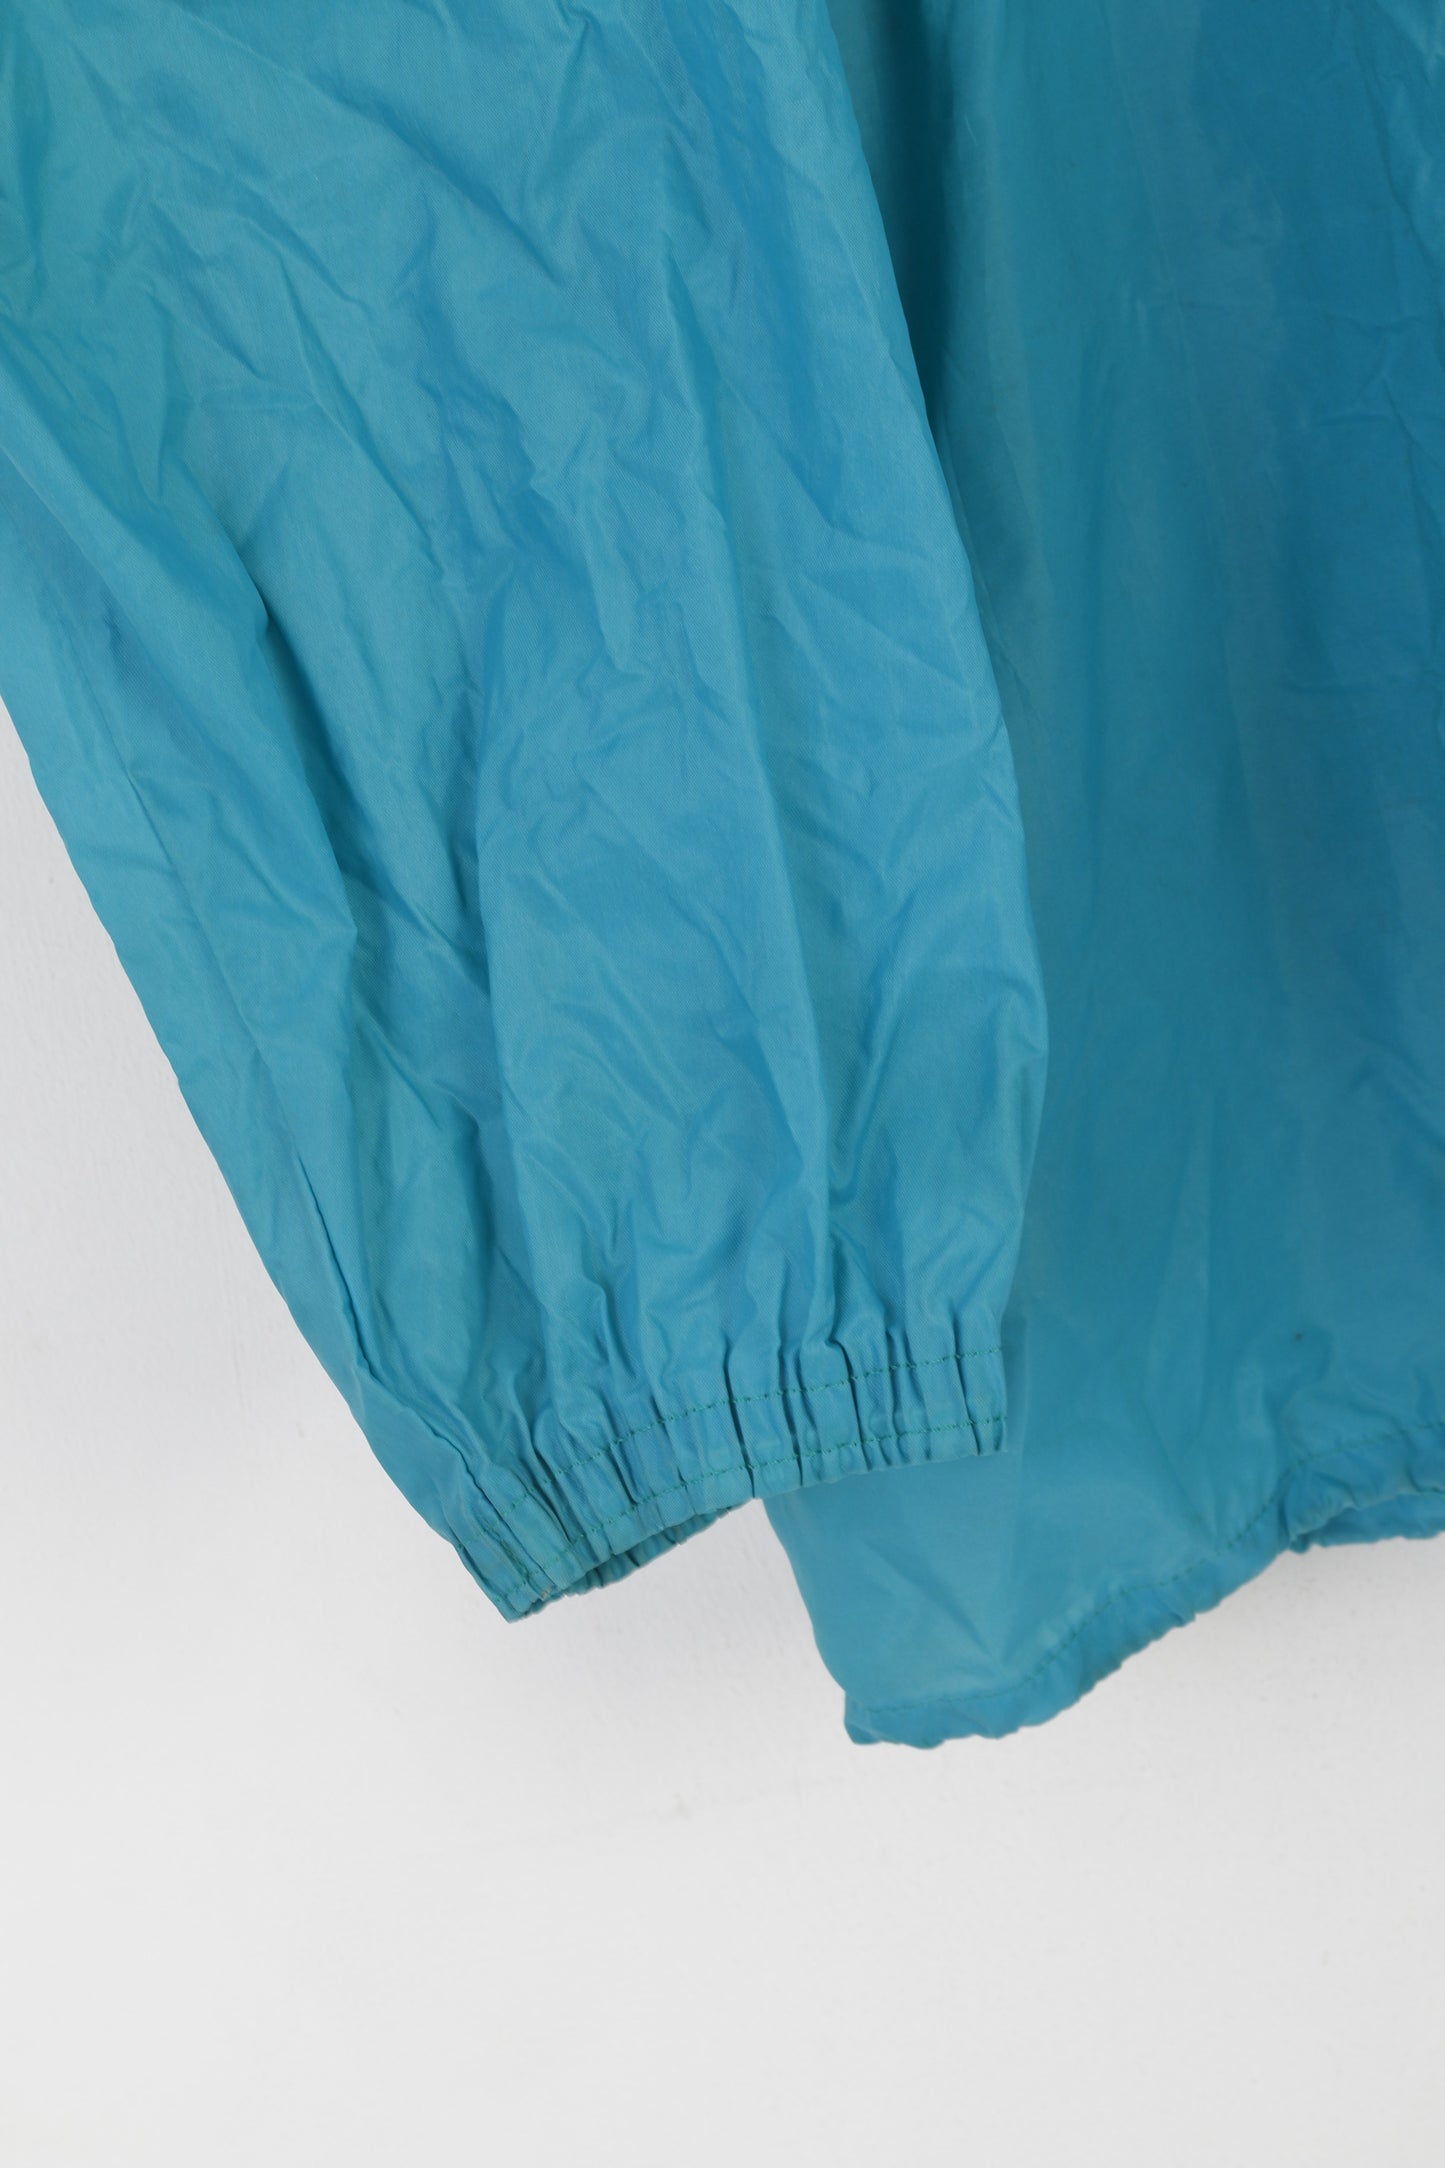 Adidas Men 183 L Jacket Sea Green Vintage Nylon Waterproof Zip Up Hooded Top